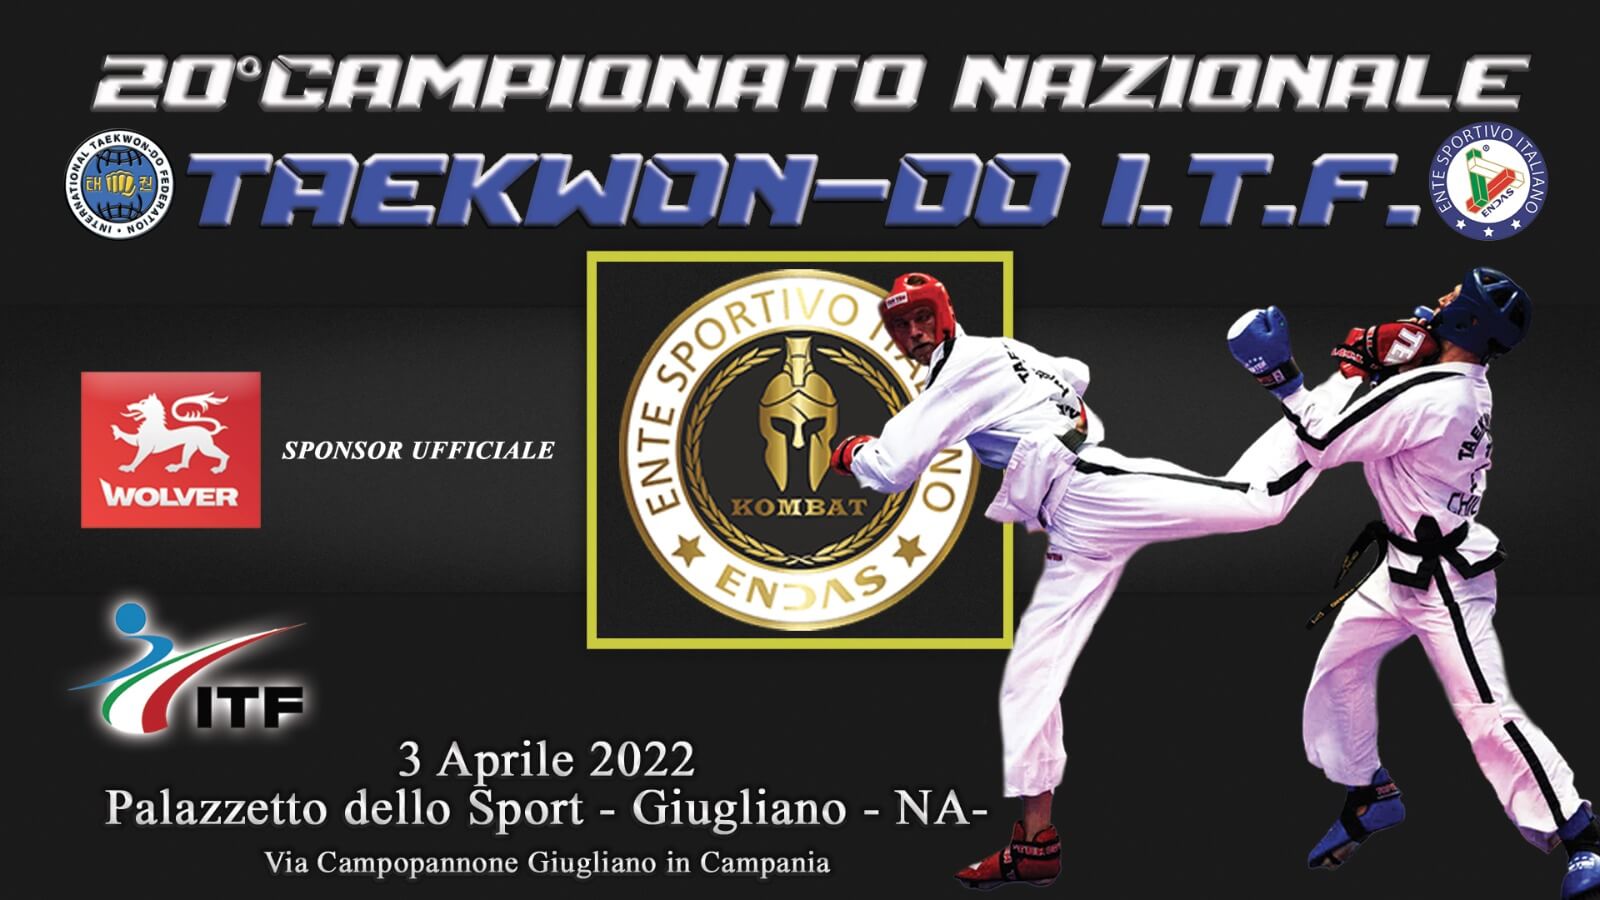 Campionato Nazionale ENDAS - Palazzetto dello Sport di Giugliano in Campania (NA)